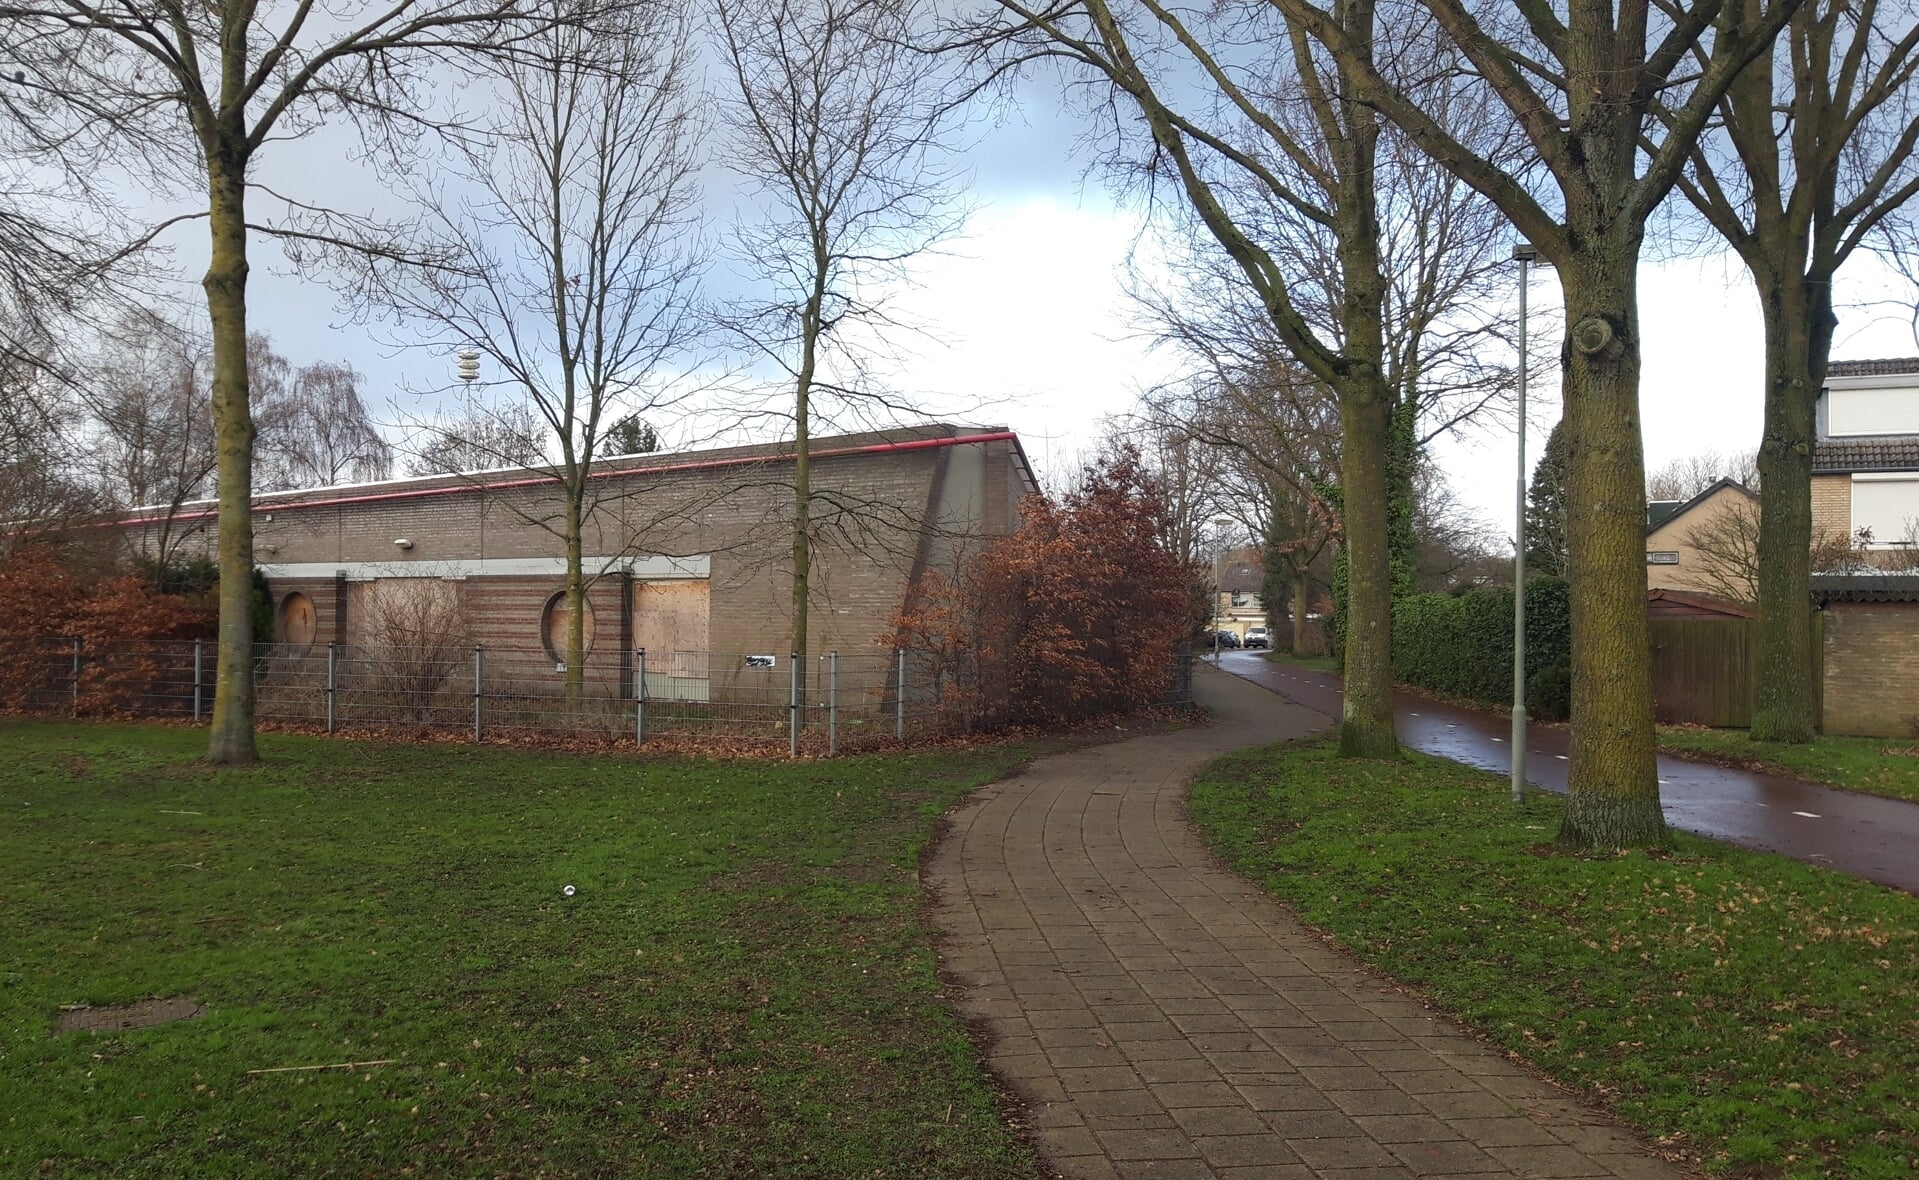 Op de plek van deze voormalige basisschool wil woonstichting Joost een appartementencomplex met sociale huurwoningen realiseren. (Foto: Henk van Weert).